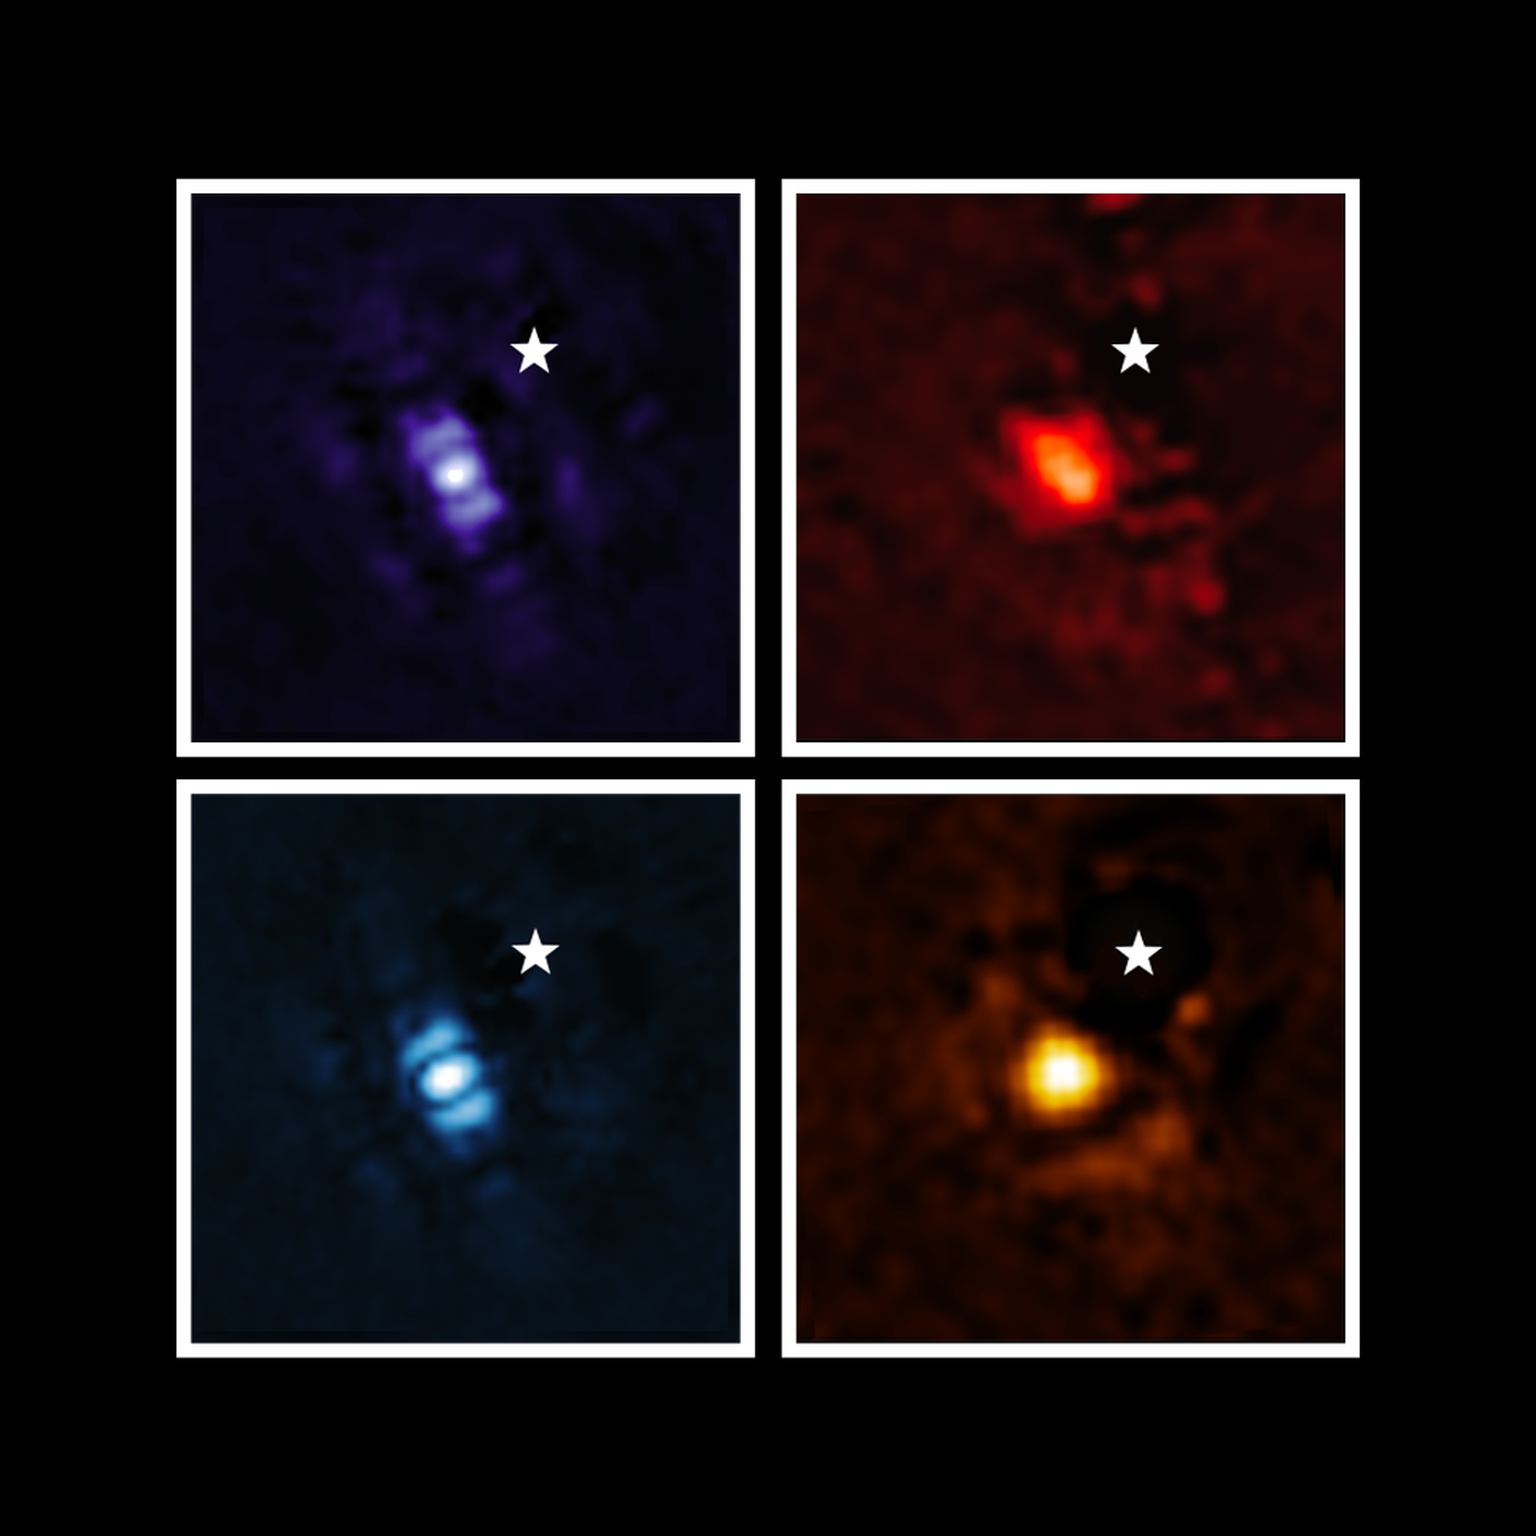 Pildil on eksoplaneet HIP 65426 b erinevates infrapunavalguse lainealades, nagu näha James Webbi kosmoseteleskoobist: lilla näitab NIRCami instrumendi vaadet 3,00 mikromeetrisel lainepikkusel, sinine 4,44 mikromeetril, kollane näitab MIRI instrumendi vaadet 11,4 mikromeetri juures ja punane 15,5 mikromeetri juures. Need pildid paistavad erinevad, kuna erinevad on ka Webb-i instrumendid, mis valgust talletavad. Iga instrumendi sees olev maskide komplekt, mida nimetatakse koronagraafideks, blokeerib peremeestähe valguse, nii et planeeti on paremini näha. Väike valge täheke igal pildil tähistab peremeestähe HIP 65426 asukohta, millest on täht koronagraafide ja pilditöötluse abil eemaldatud.